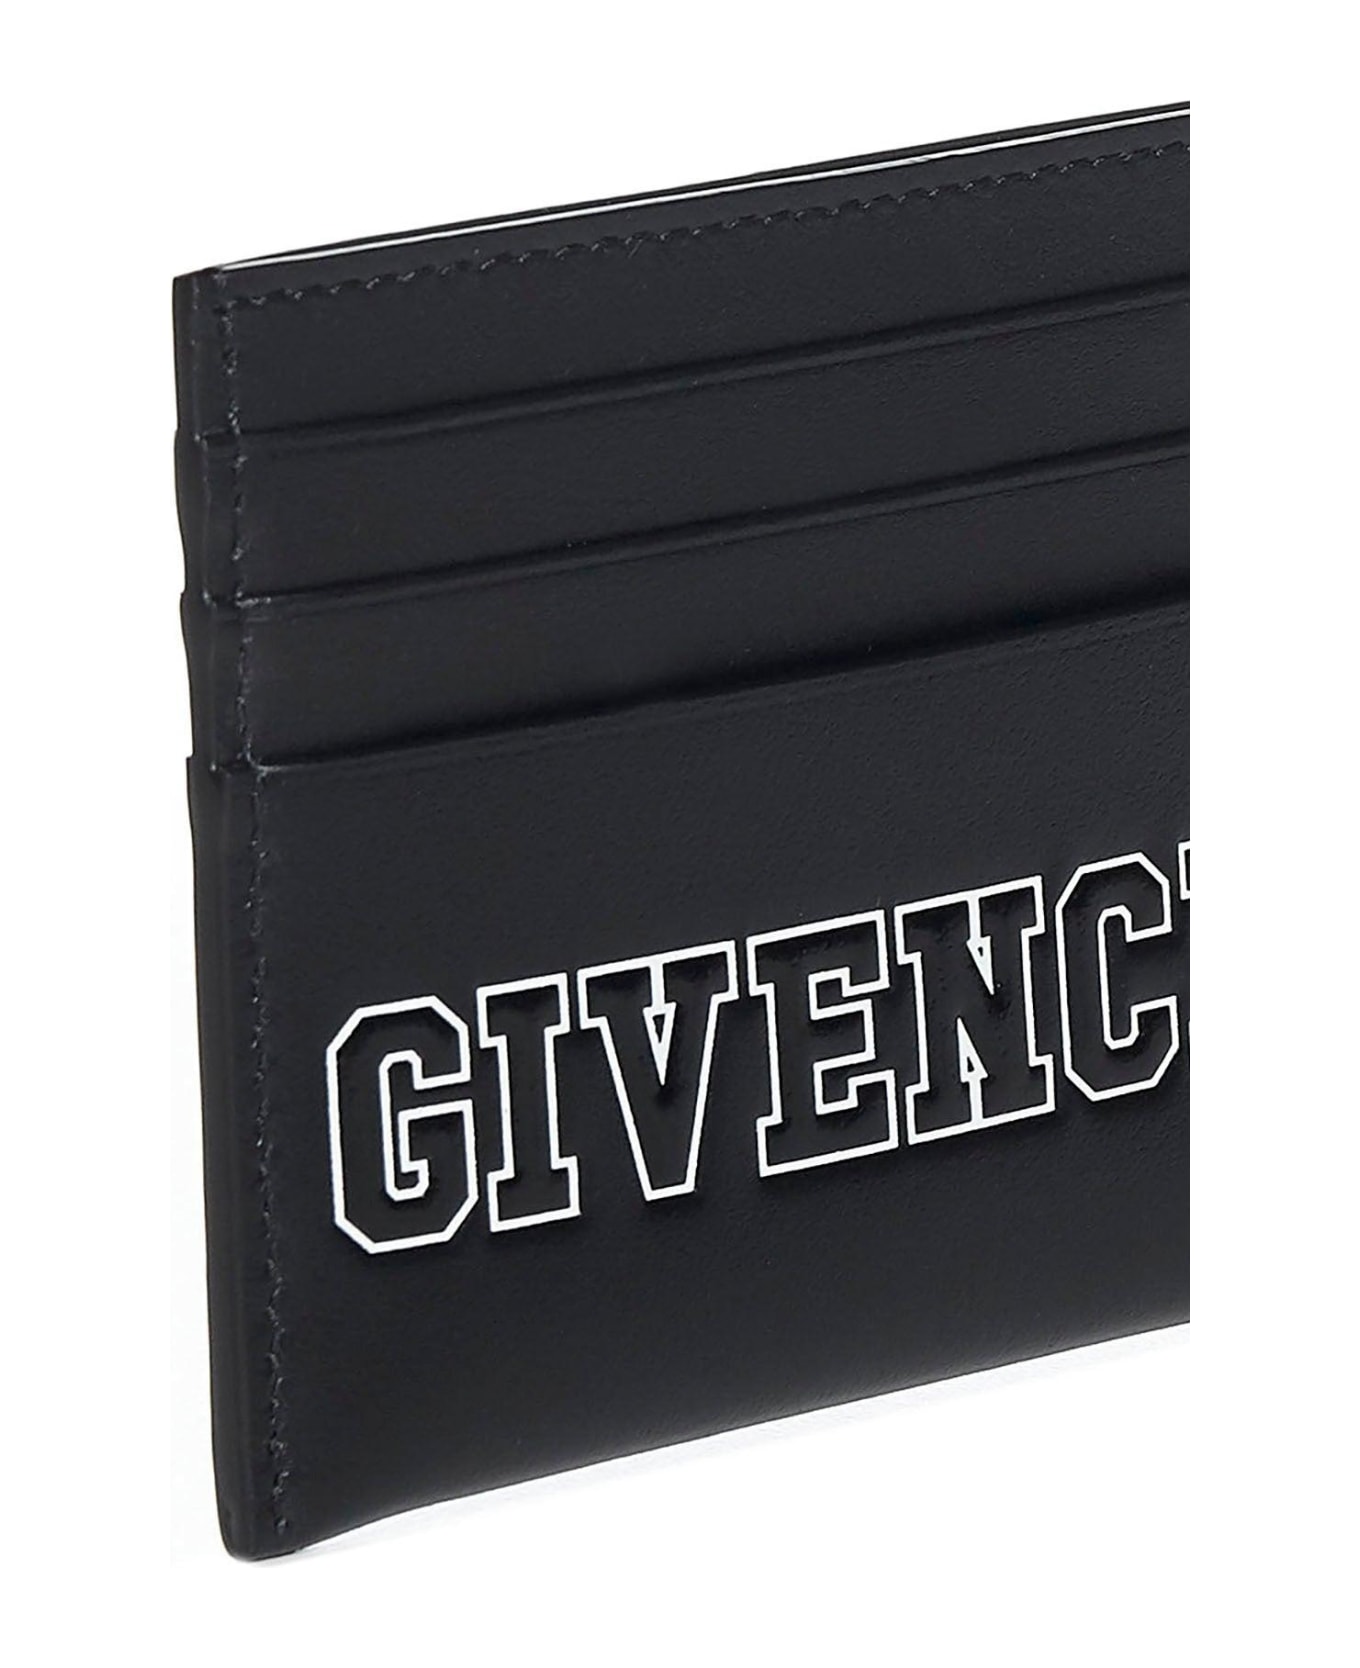 Givenchy Logo Printed Cardholder - Black